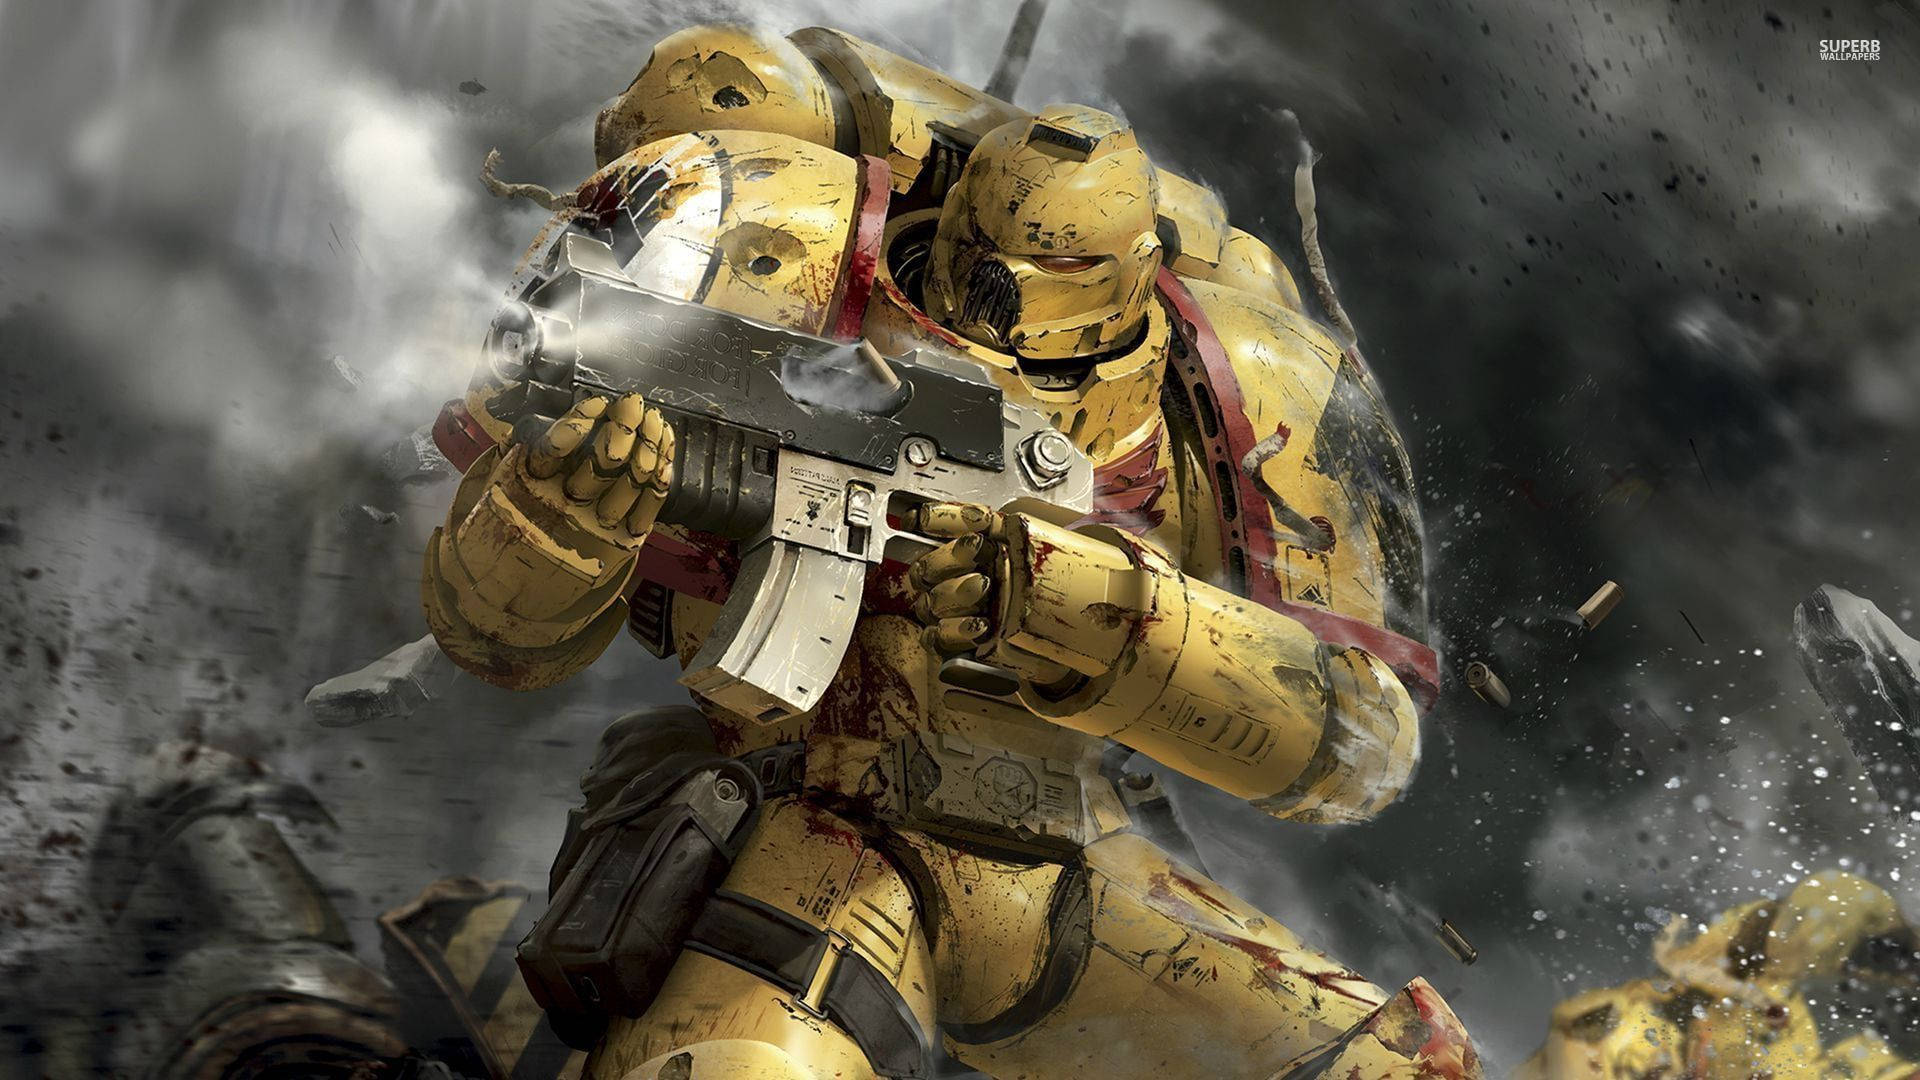 Gold Space Marine Warhammer Background